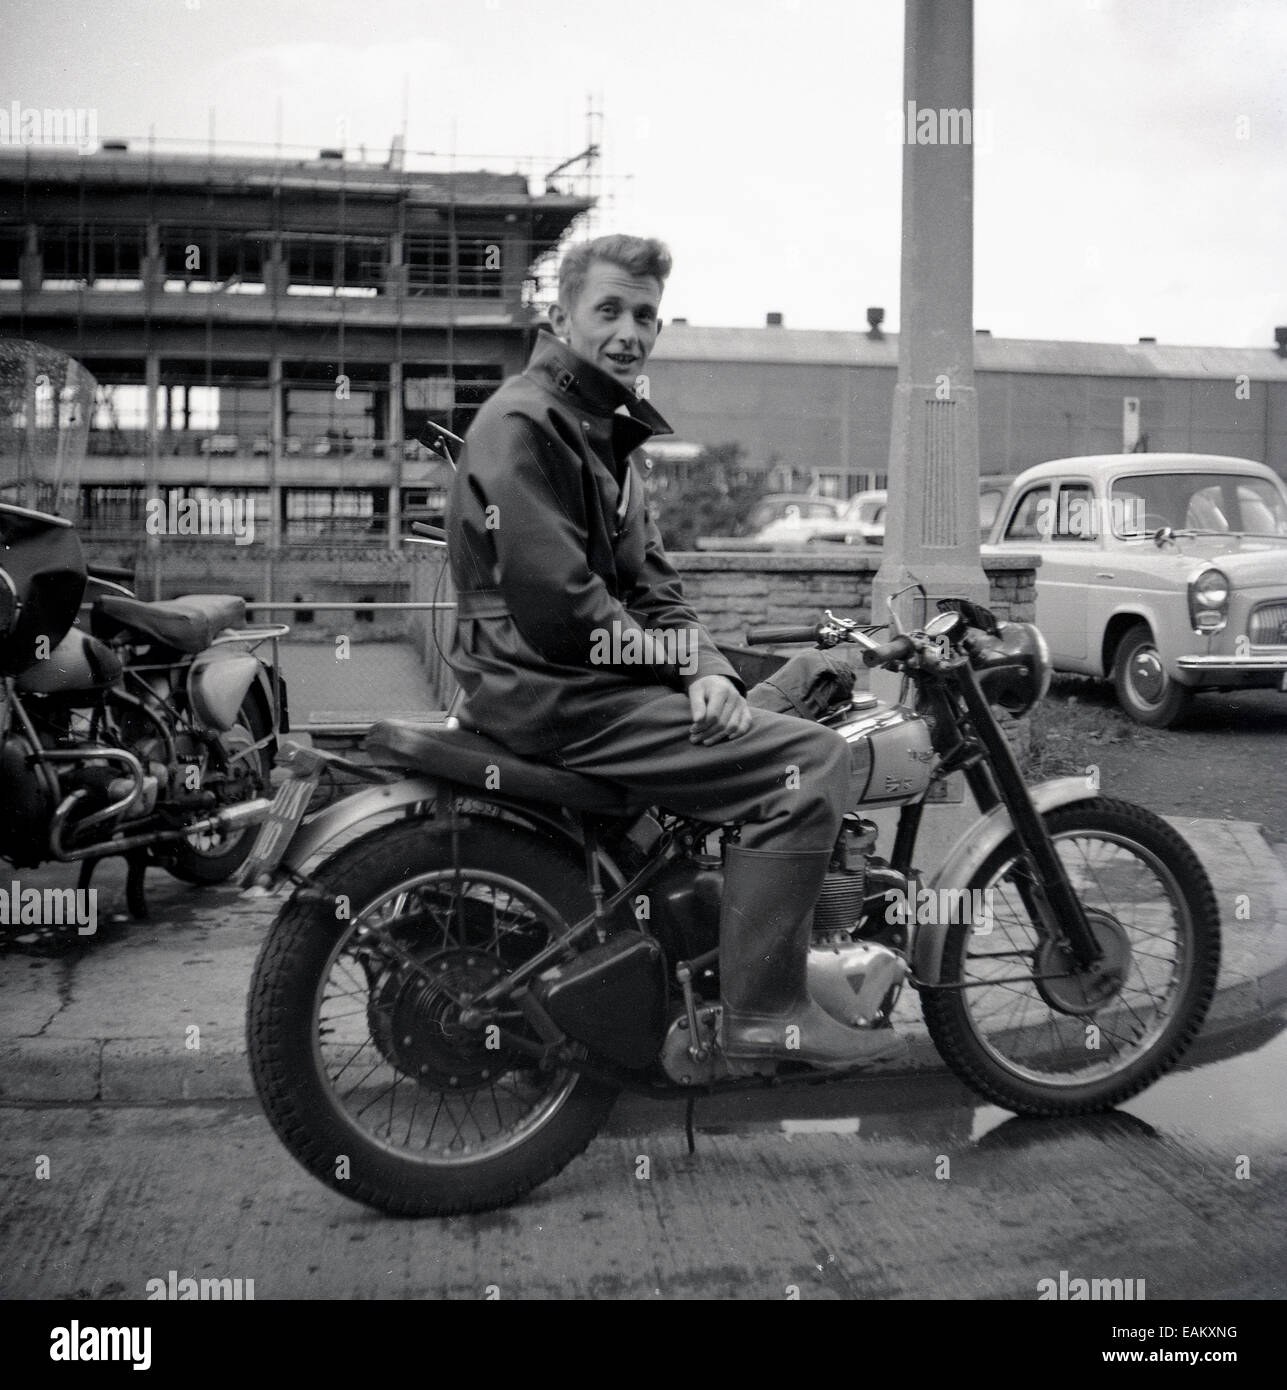 Années 1950, historique, un homme portant une veste de motard et des bottes wellington assis à l'extérieur sur sa moto Triumph, qui a un emblème de jack d'Union rayé sur le réservoir d'essence, Angleterre, Royaume-Uni. Banque D'Images